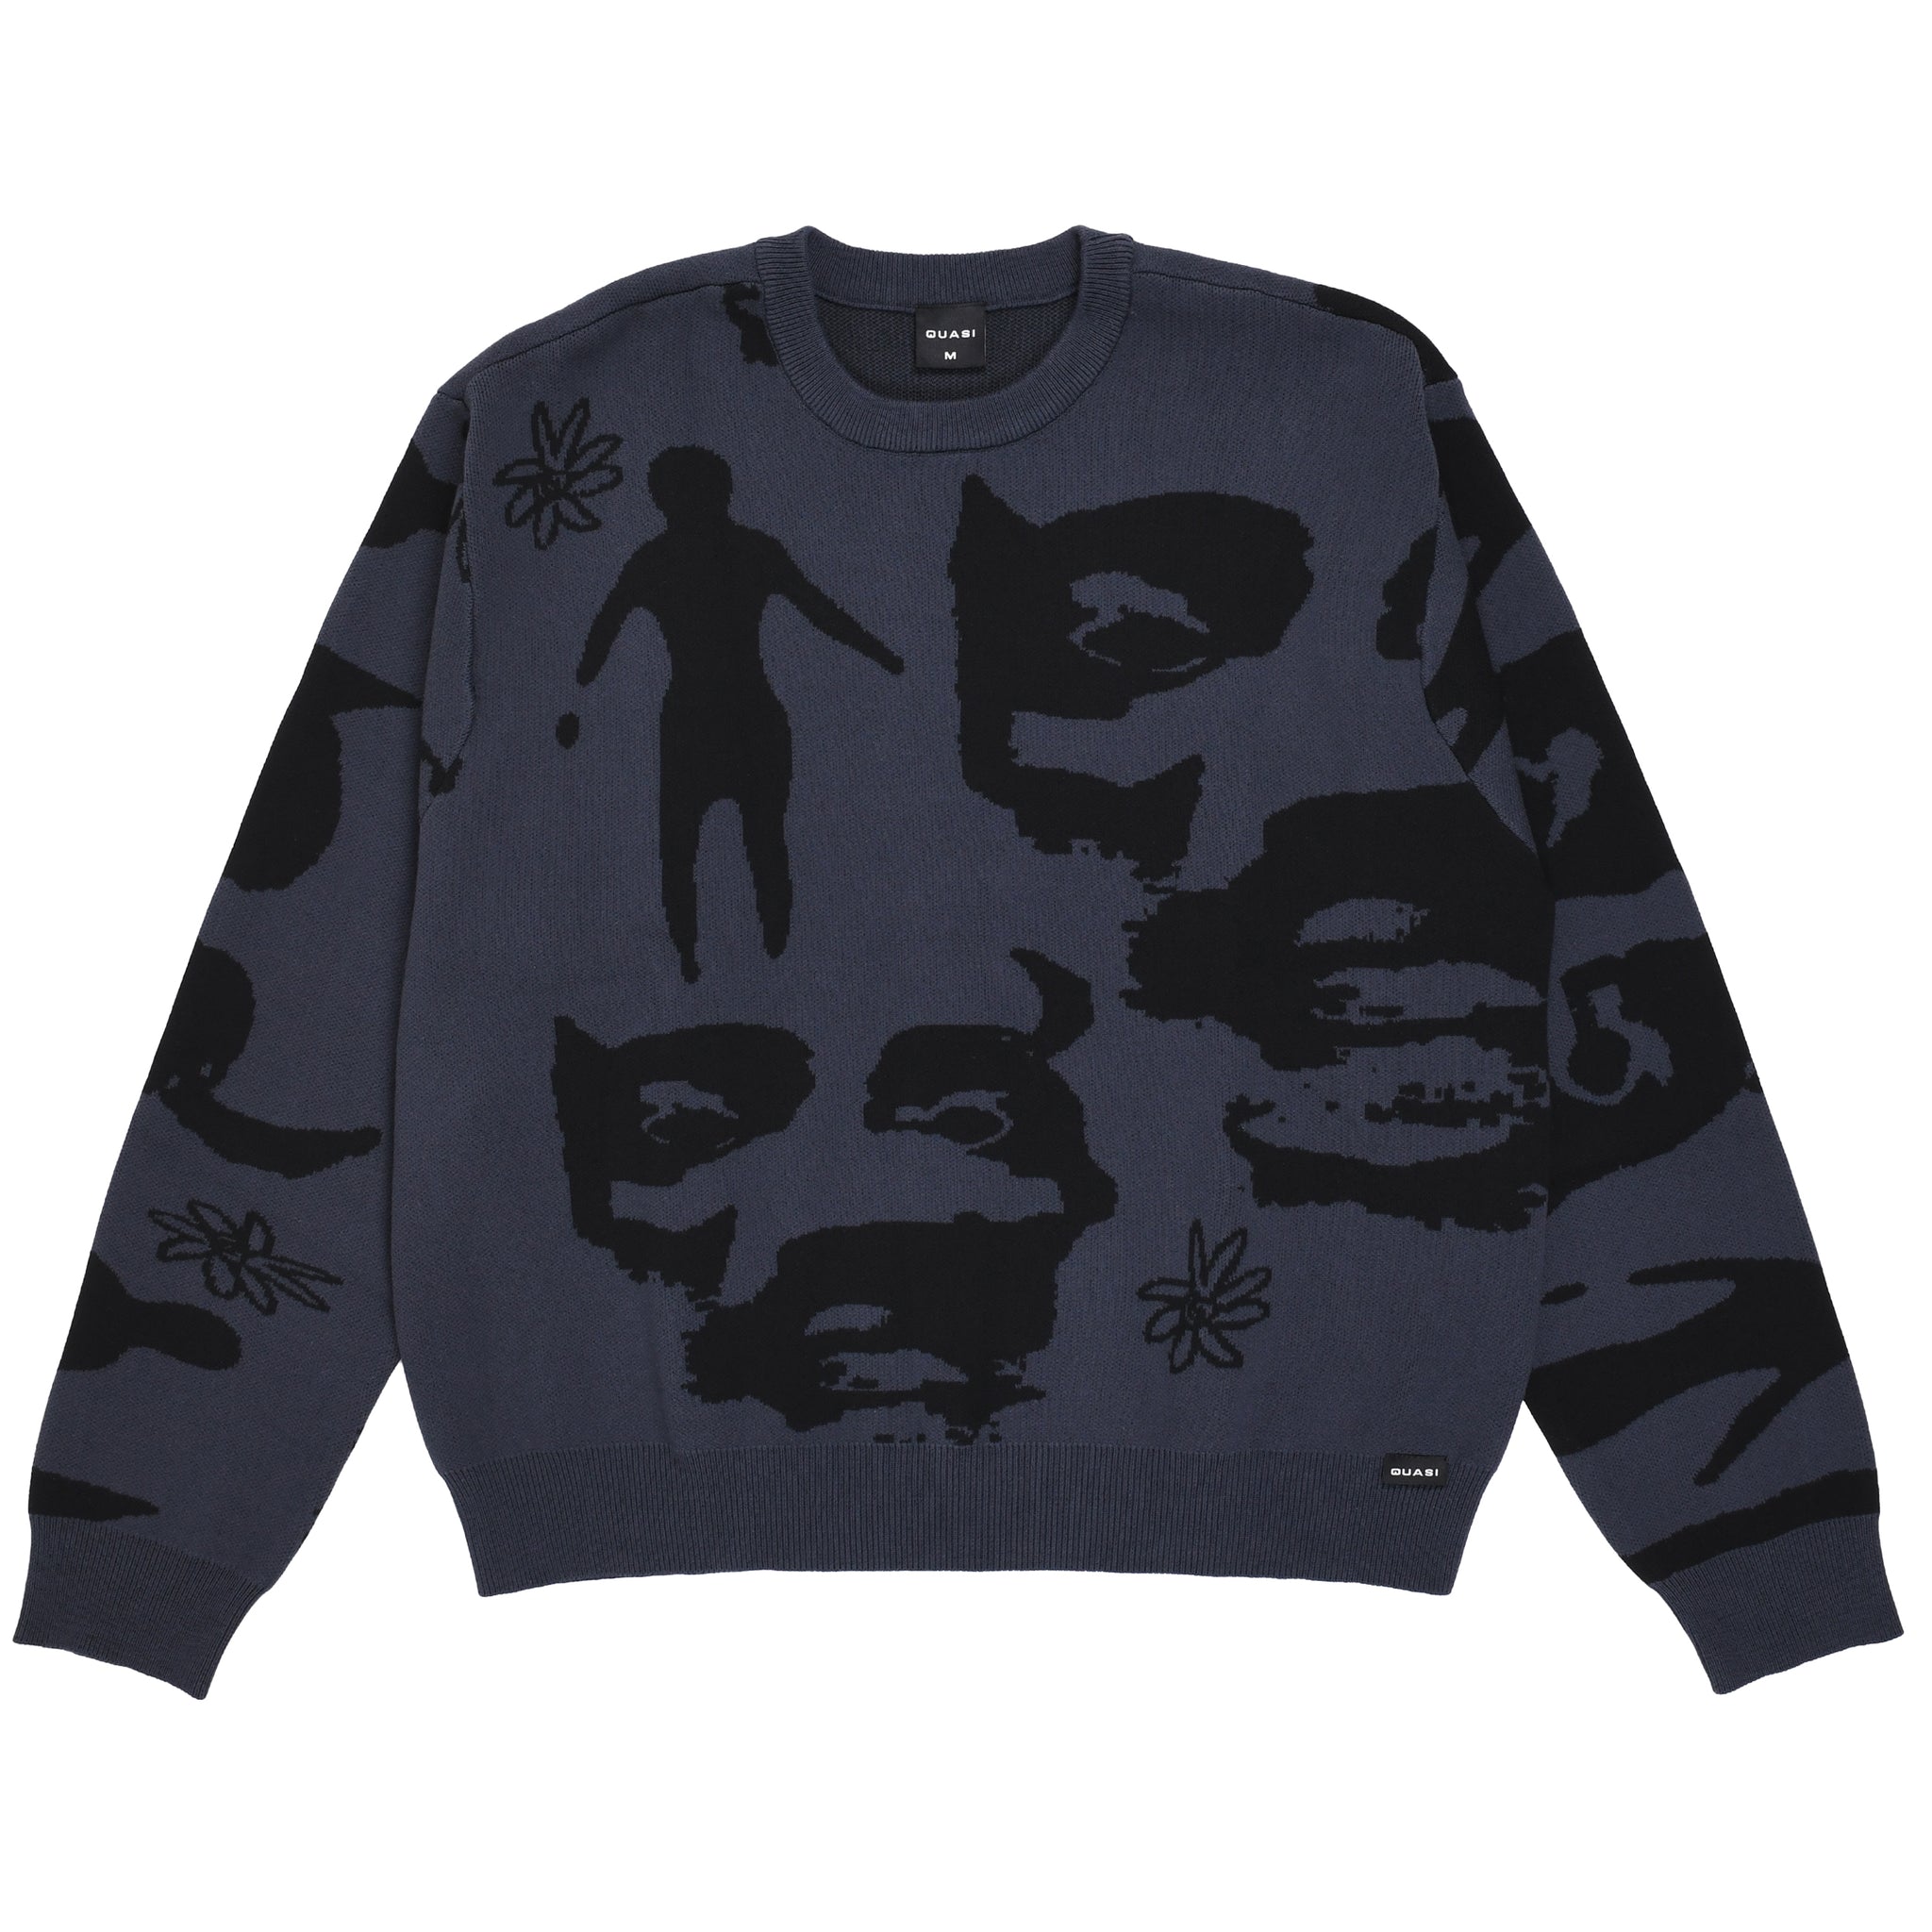 QUASI - Stoneage Sweater "Ocean"